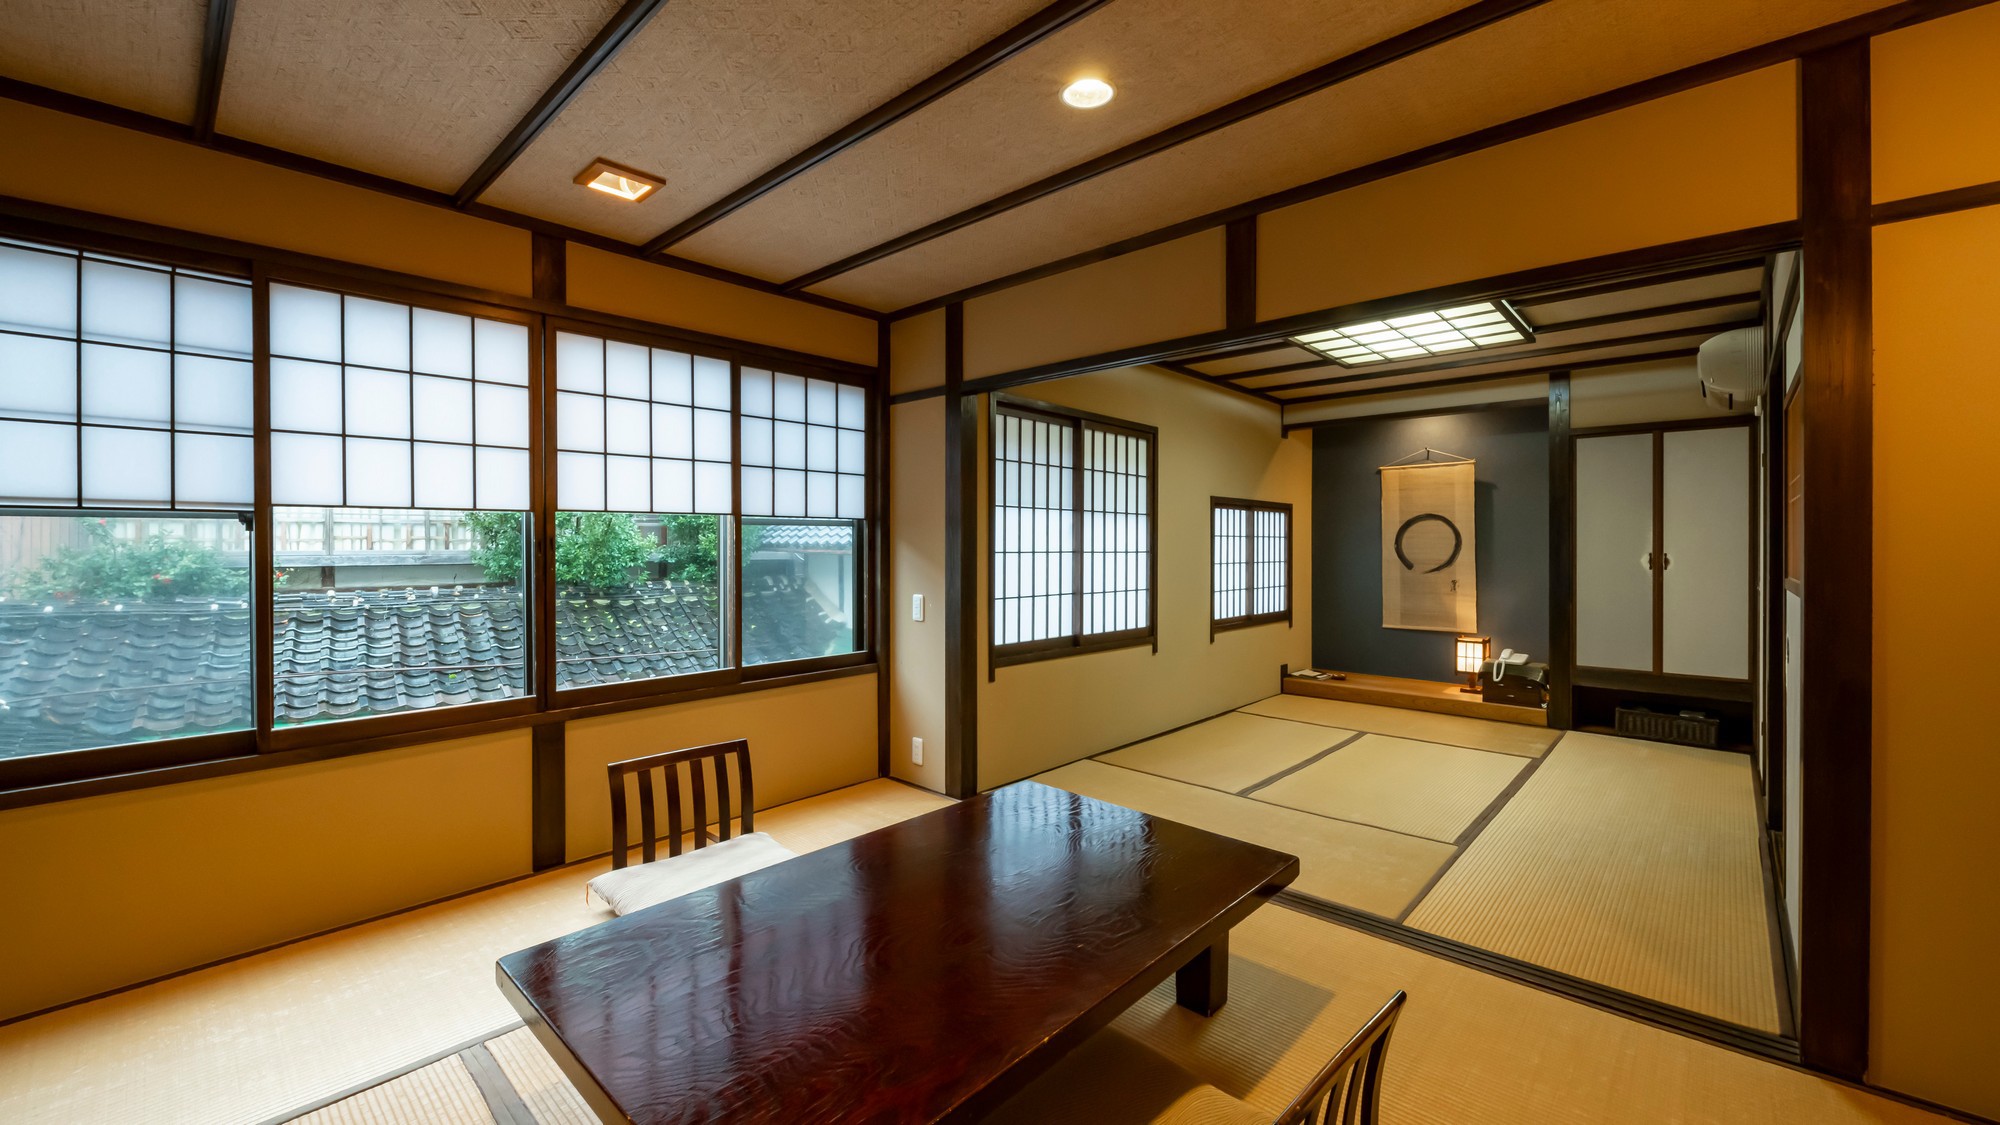 【あけび】和室10畳のお部屋。鳥取の歴史と民芸の味わいを感じられる落ち着いた大人の雰囲気。